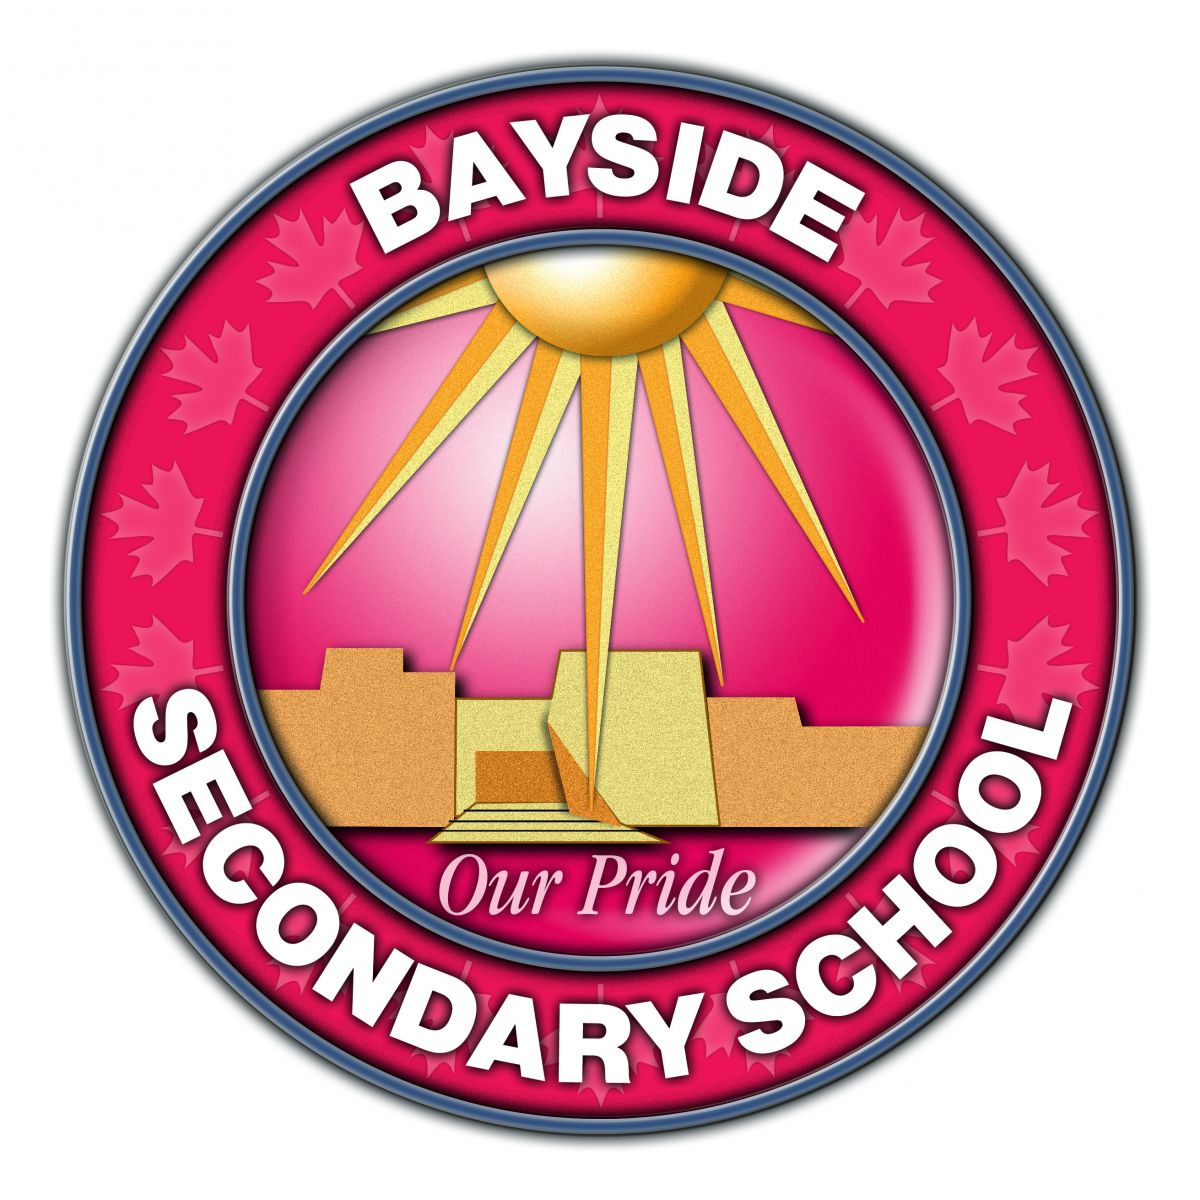 Trường Trung Học Bayside Secondary School – Belleville, Ontario, Canada